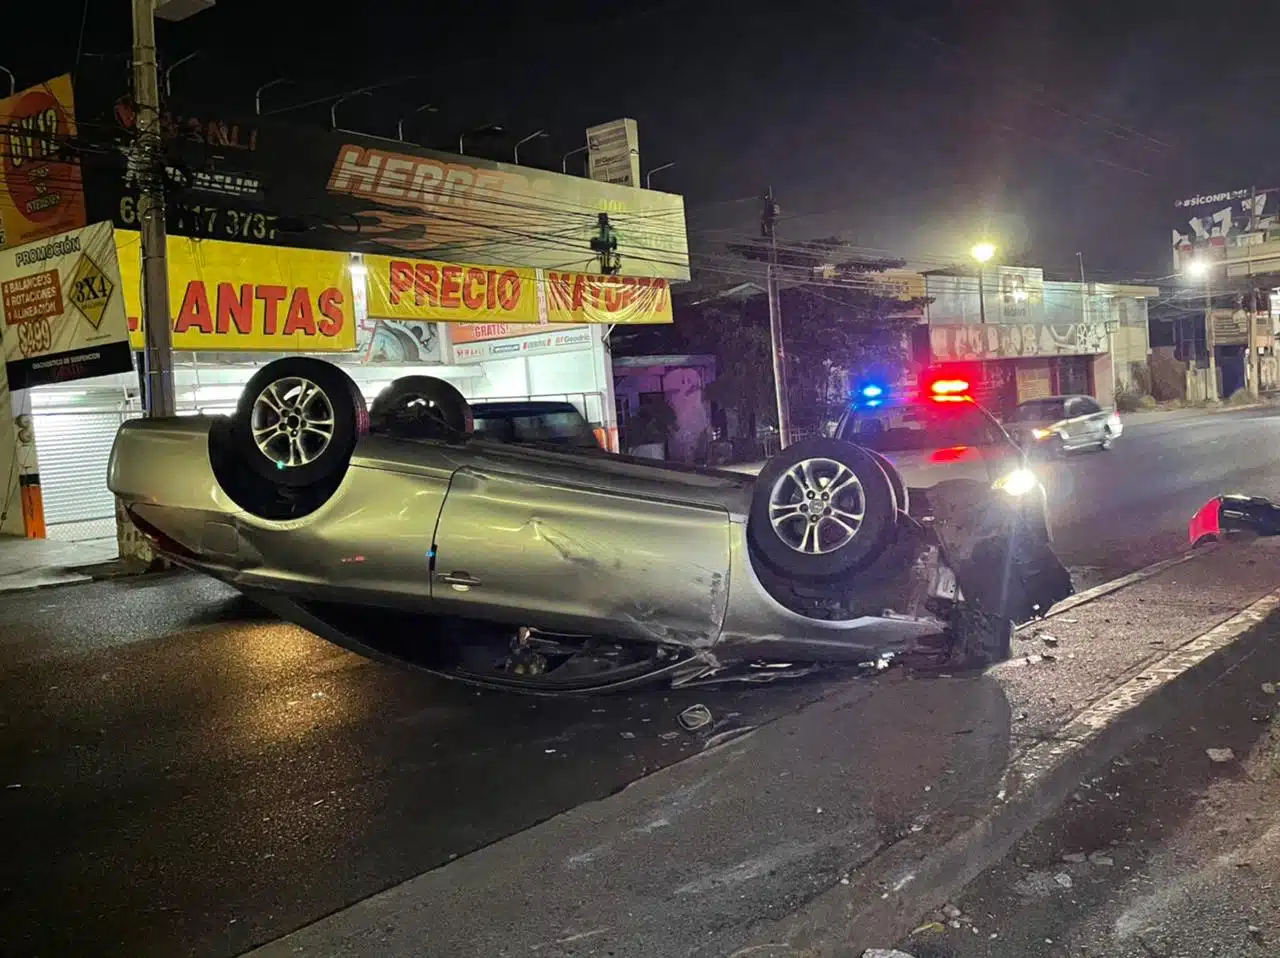 Llantas arriba queda un Toyota Solara, tras volcar en bulevar Emiliano Zapata de Culiacán 